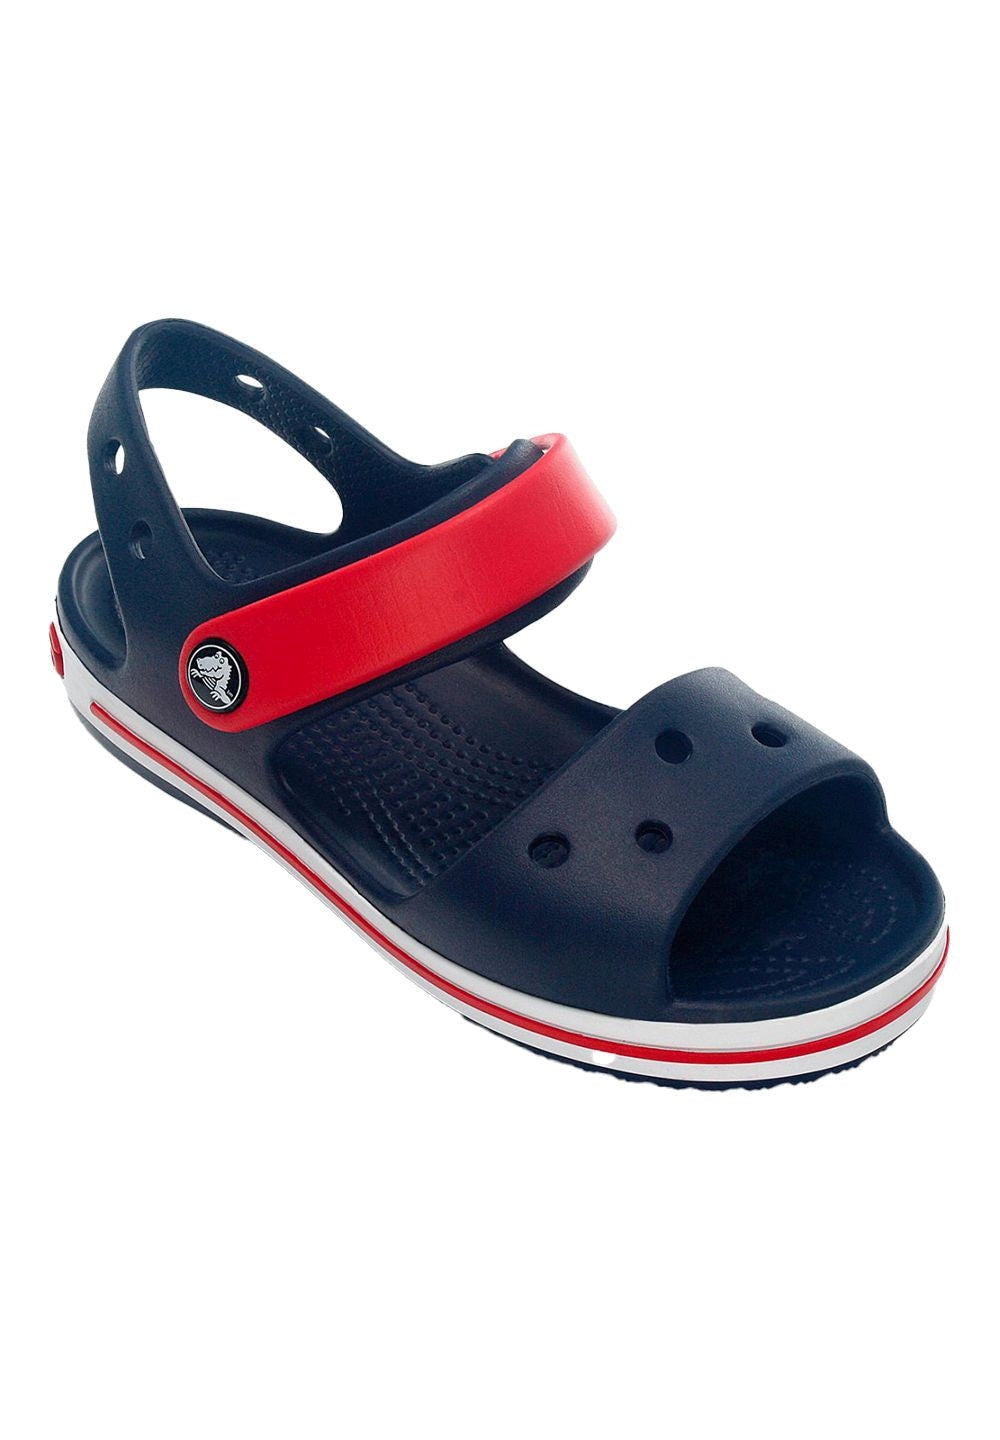 Sandalo blu-rosso per bambino